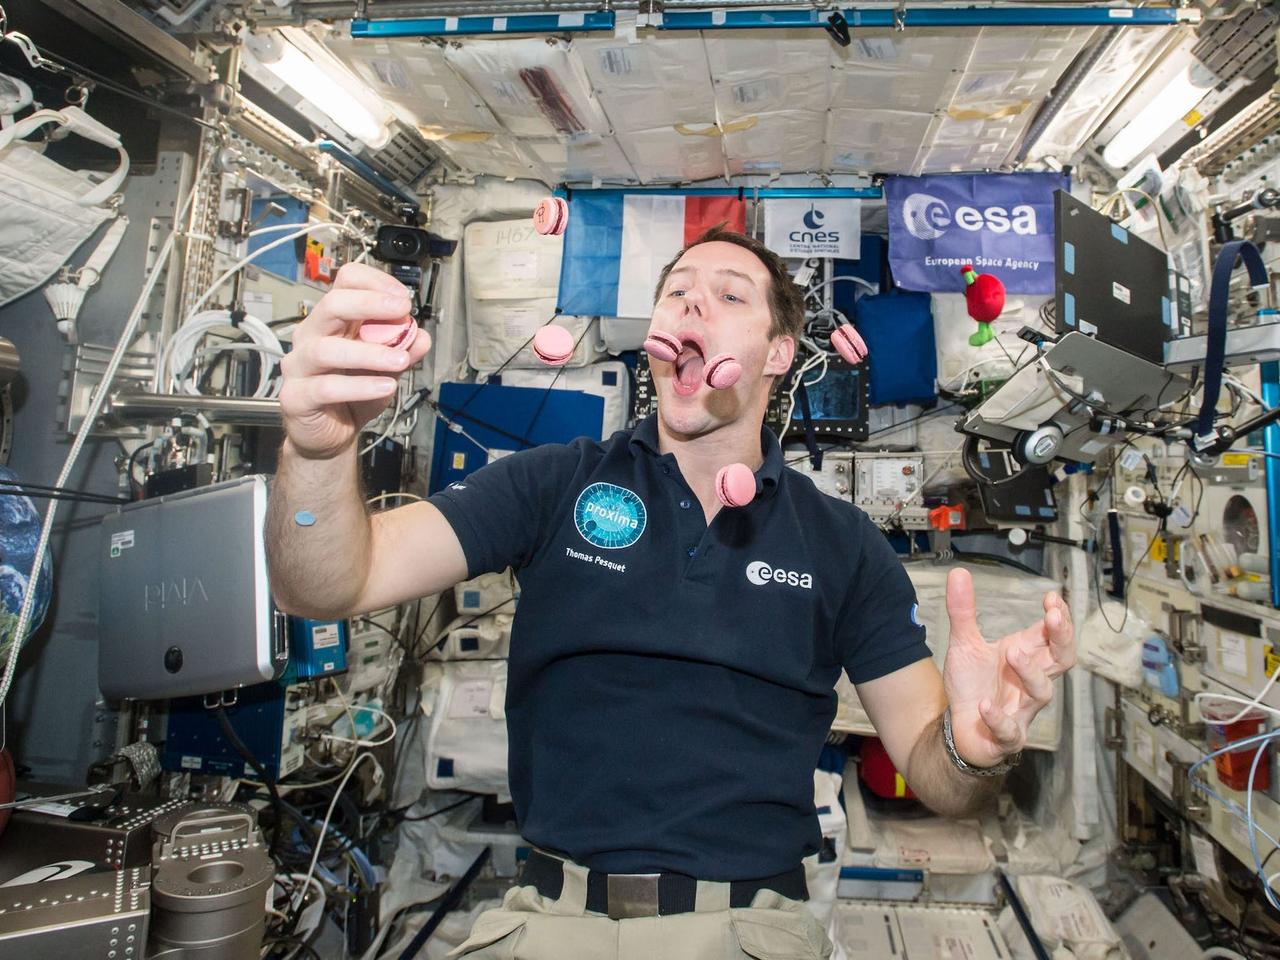 2017年、国際宇宙ステーションに届けられたフランス産マカロンで遊ぶ欧州宇宙機関のトマ・ペスケ宇宙飛行士。